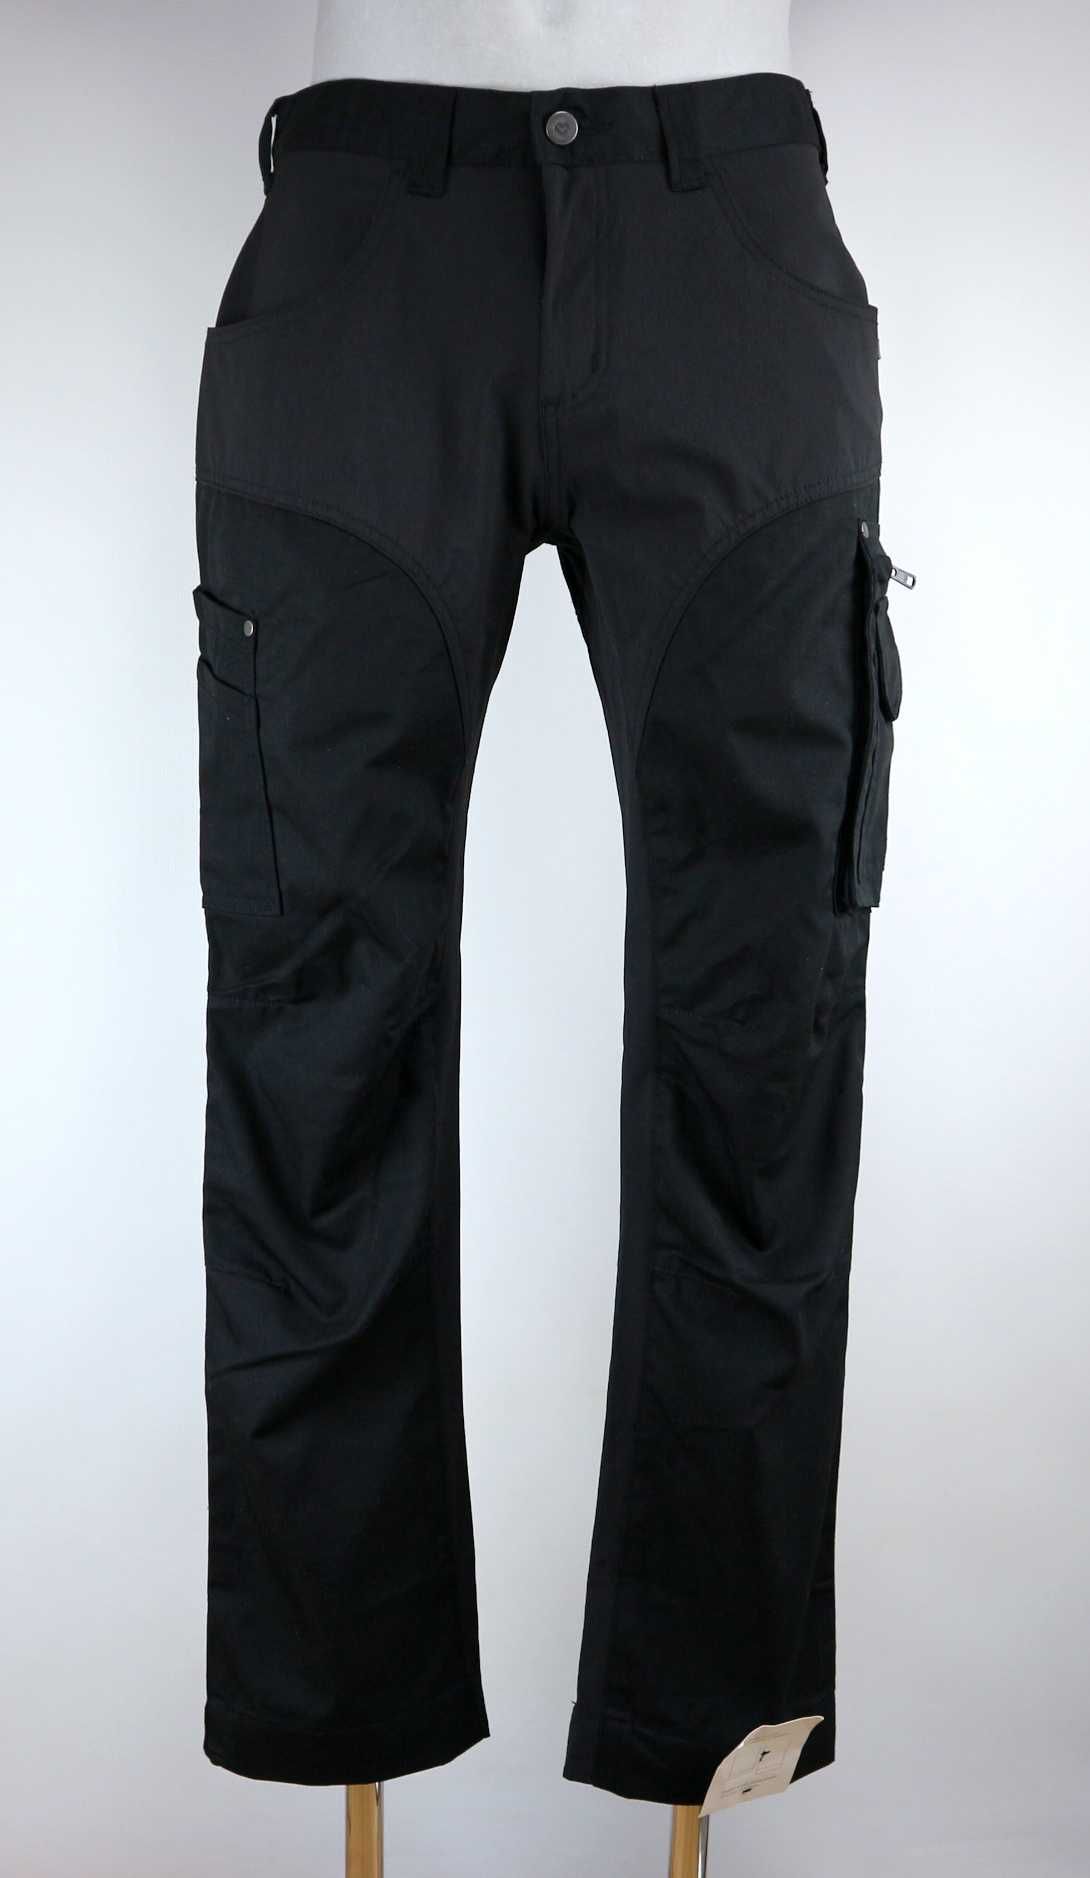 L.Brador damskie spodnie robocze ze stretchem 42 (L)